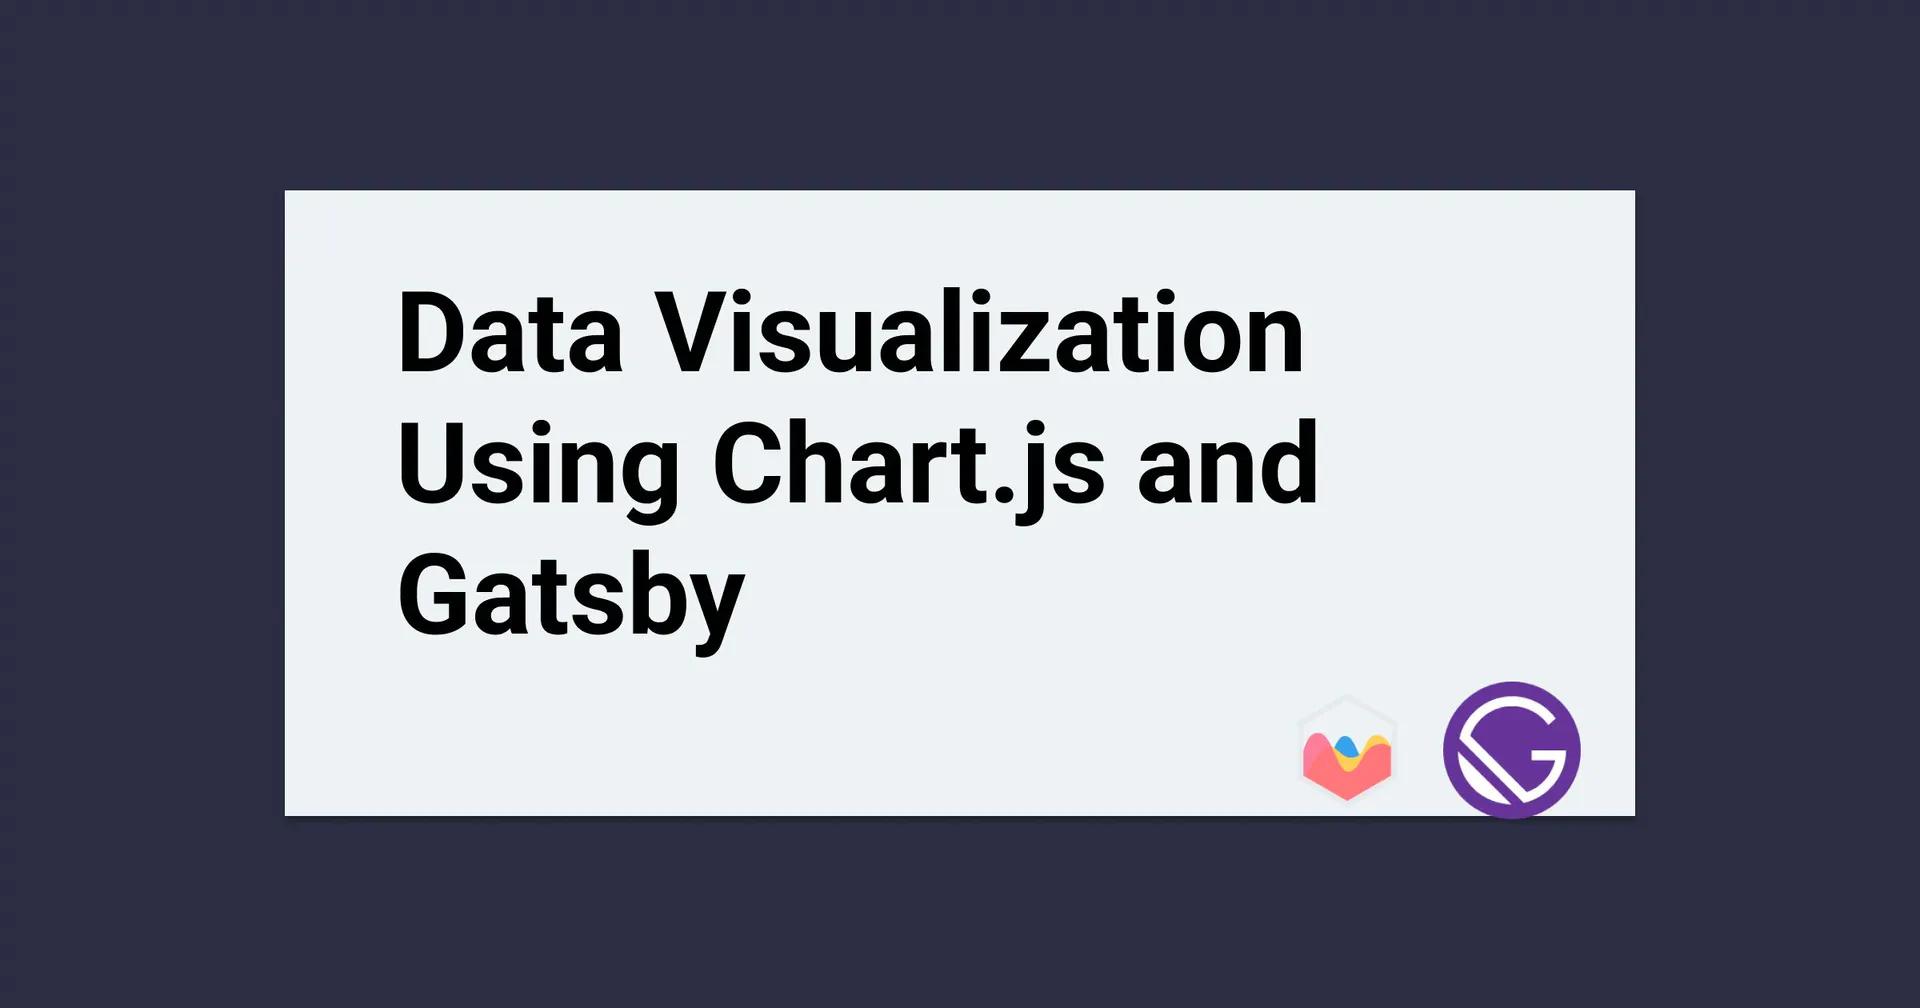 Data Visualization Using Chart.js and Gatsby